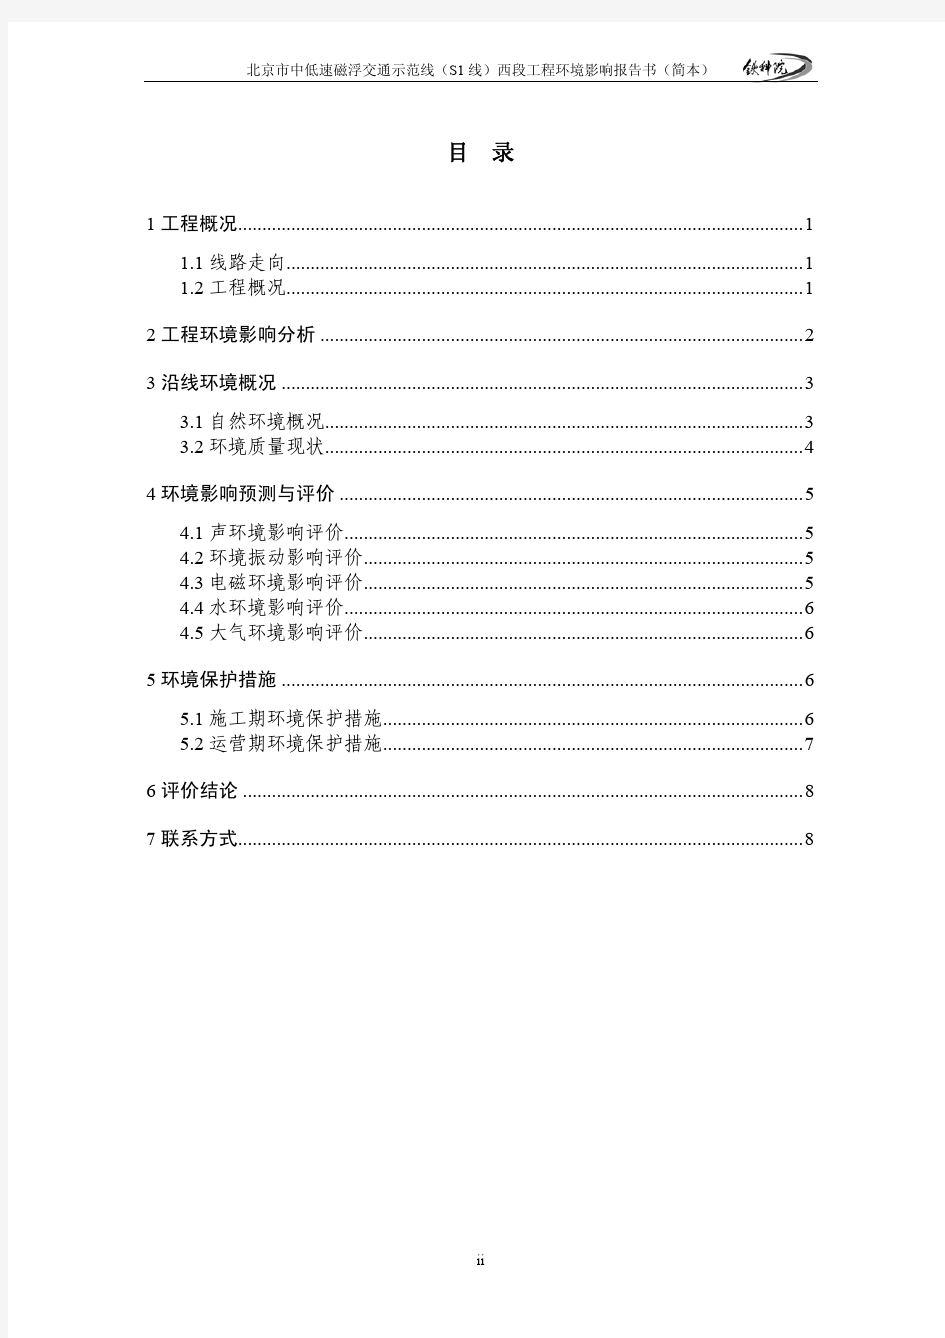 北京市中低速磁浮交通示范线(S1 线)西段工程环境影响报告书(简本)